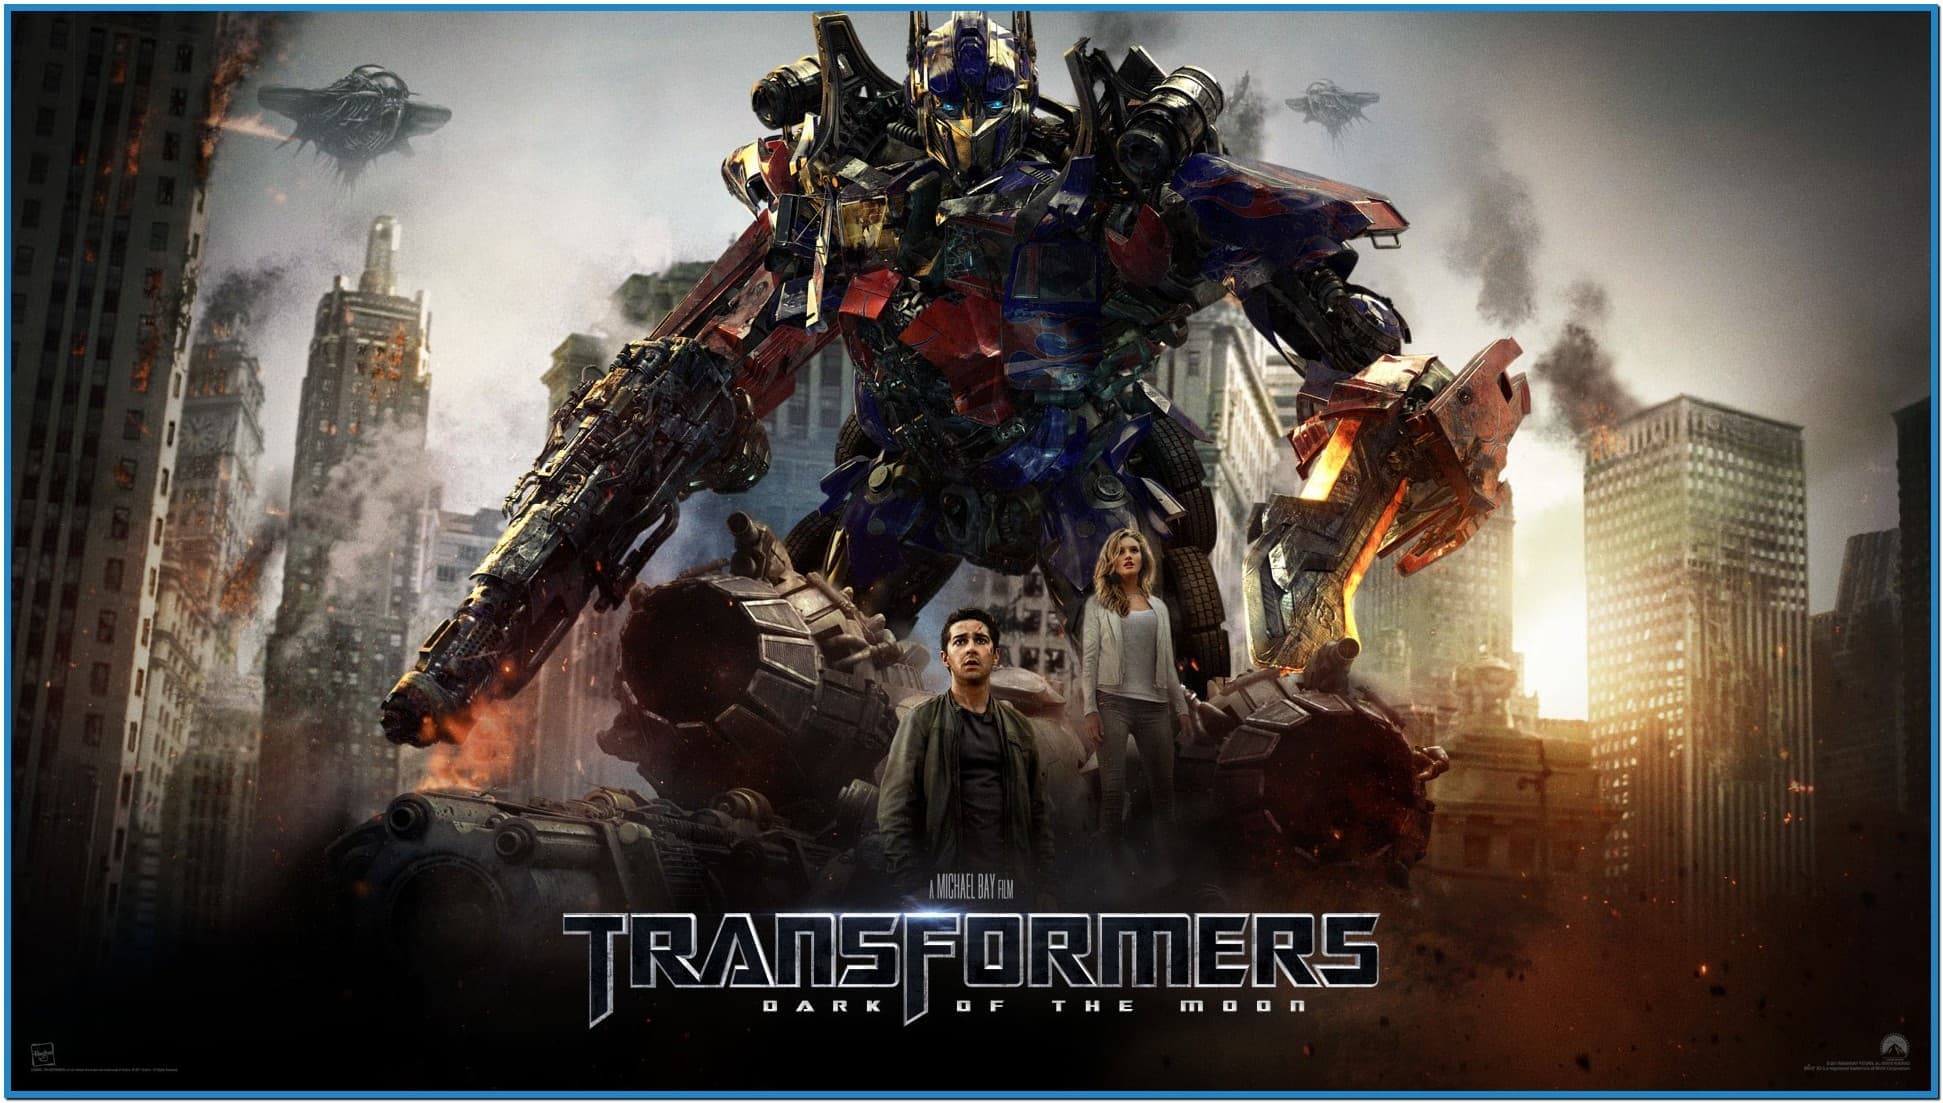 Transformers 3 screensaver mac   Download free